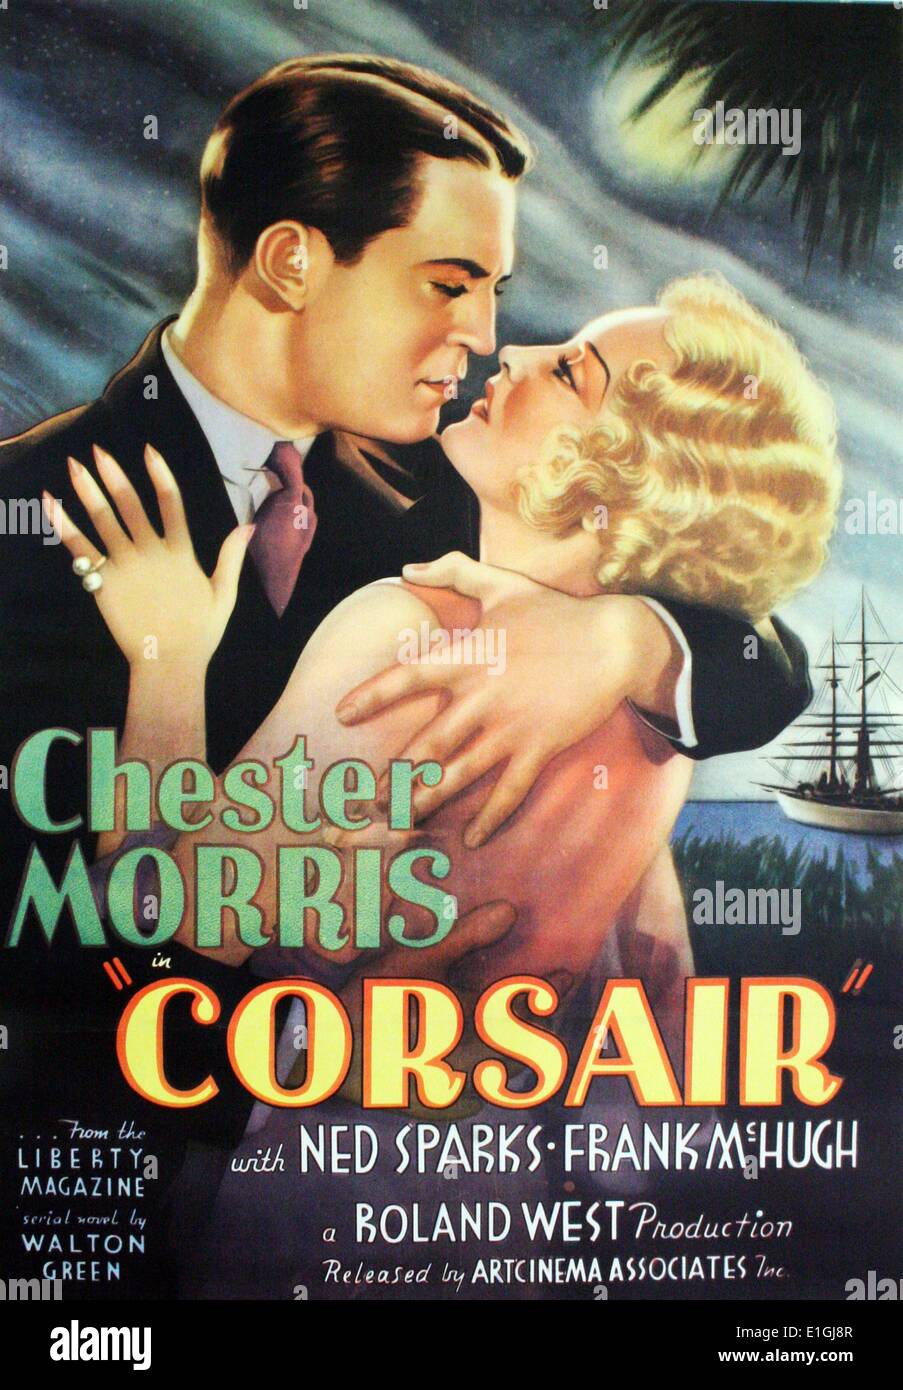 Corsair est un film de gangster américain de 1931 réalisé par Roland à l'Ouest. Le film est basé sur le roman Corsair par Walton et vert a lieu dans et a été tourné pendant l'ère de la Prohibition aux États-Unis. Banque D'Images